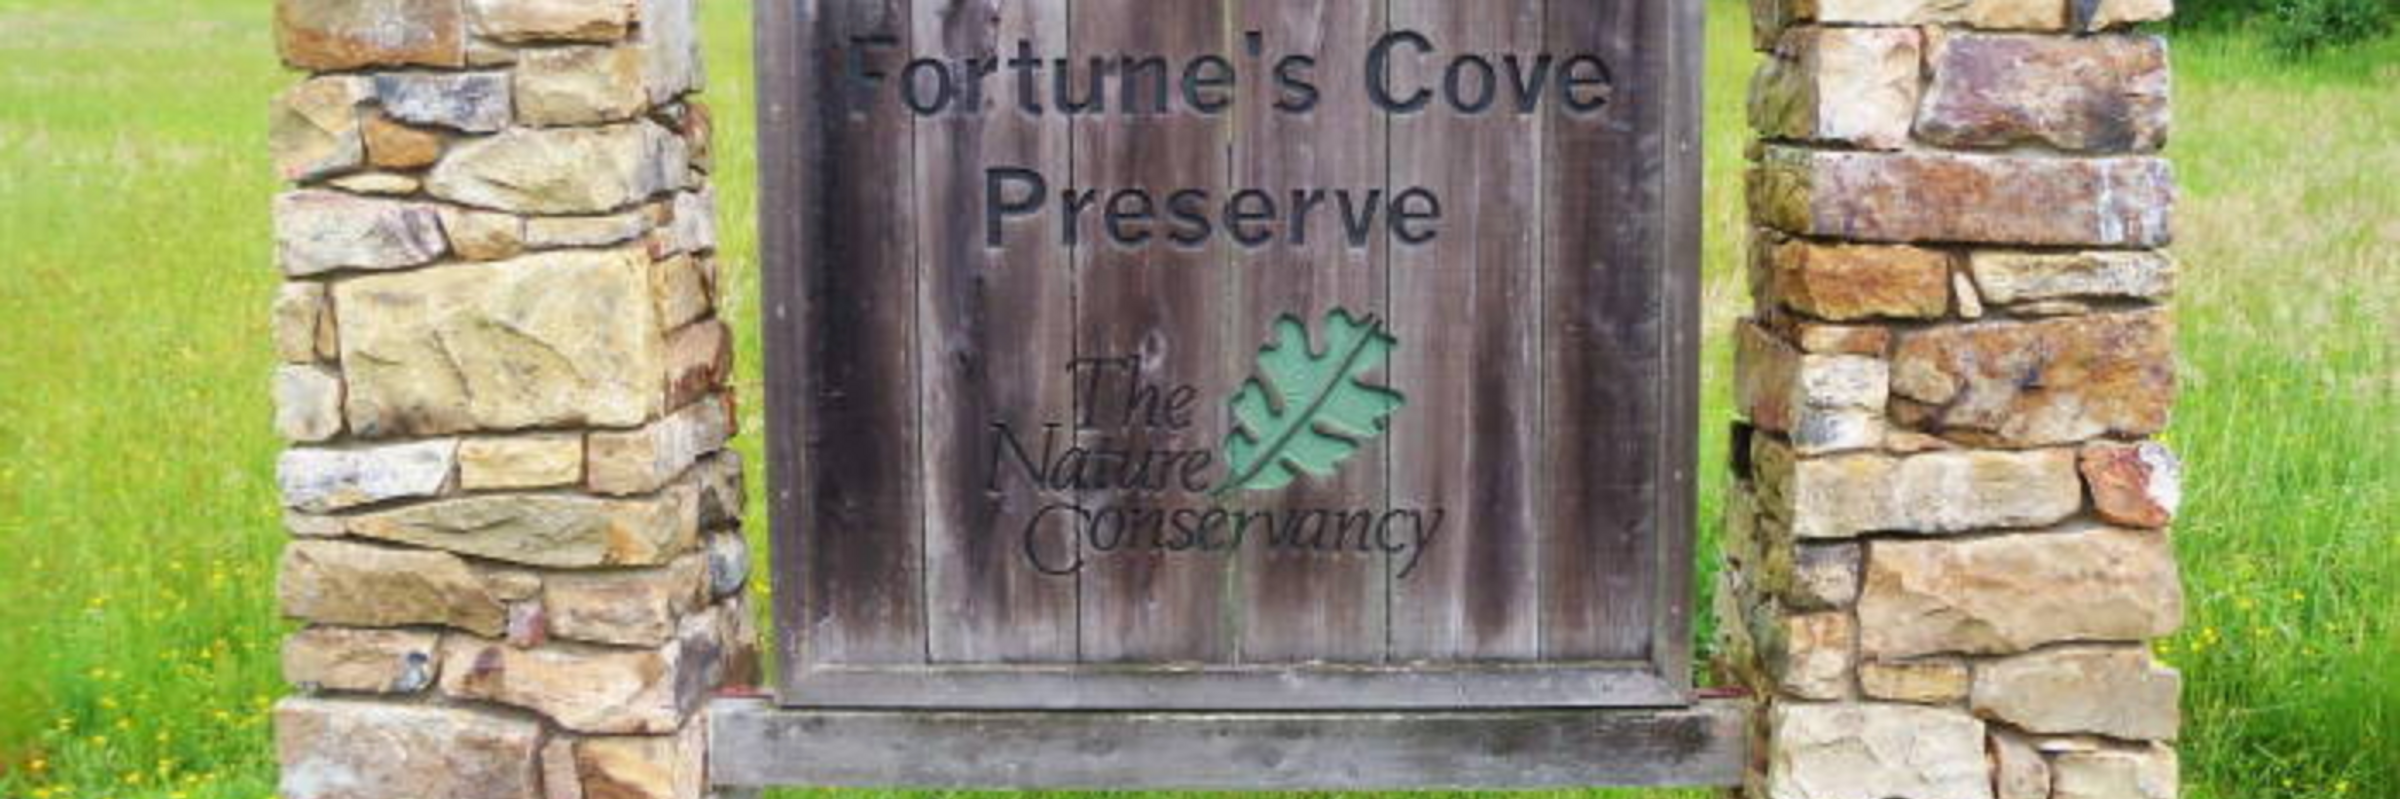 Fortune's Cove Preserve